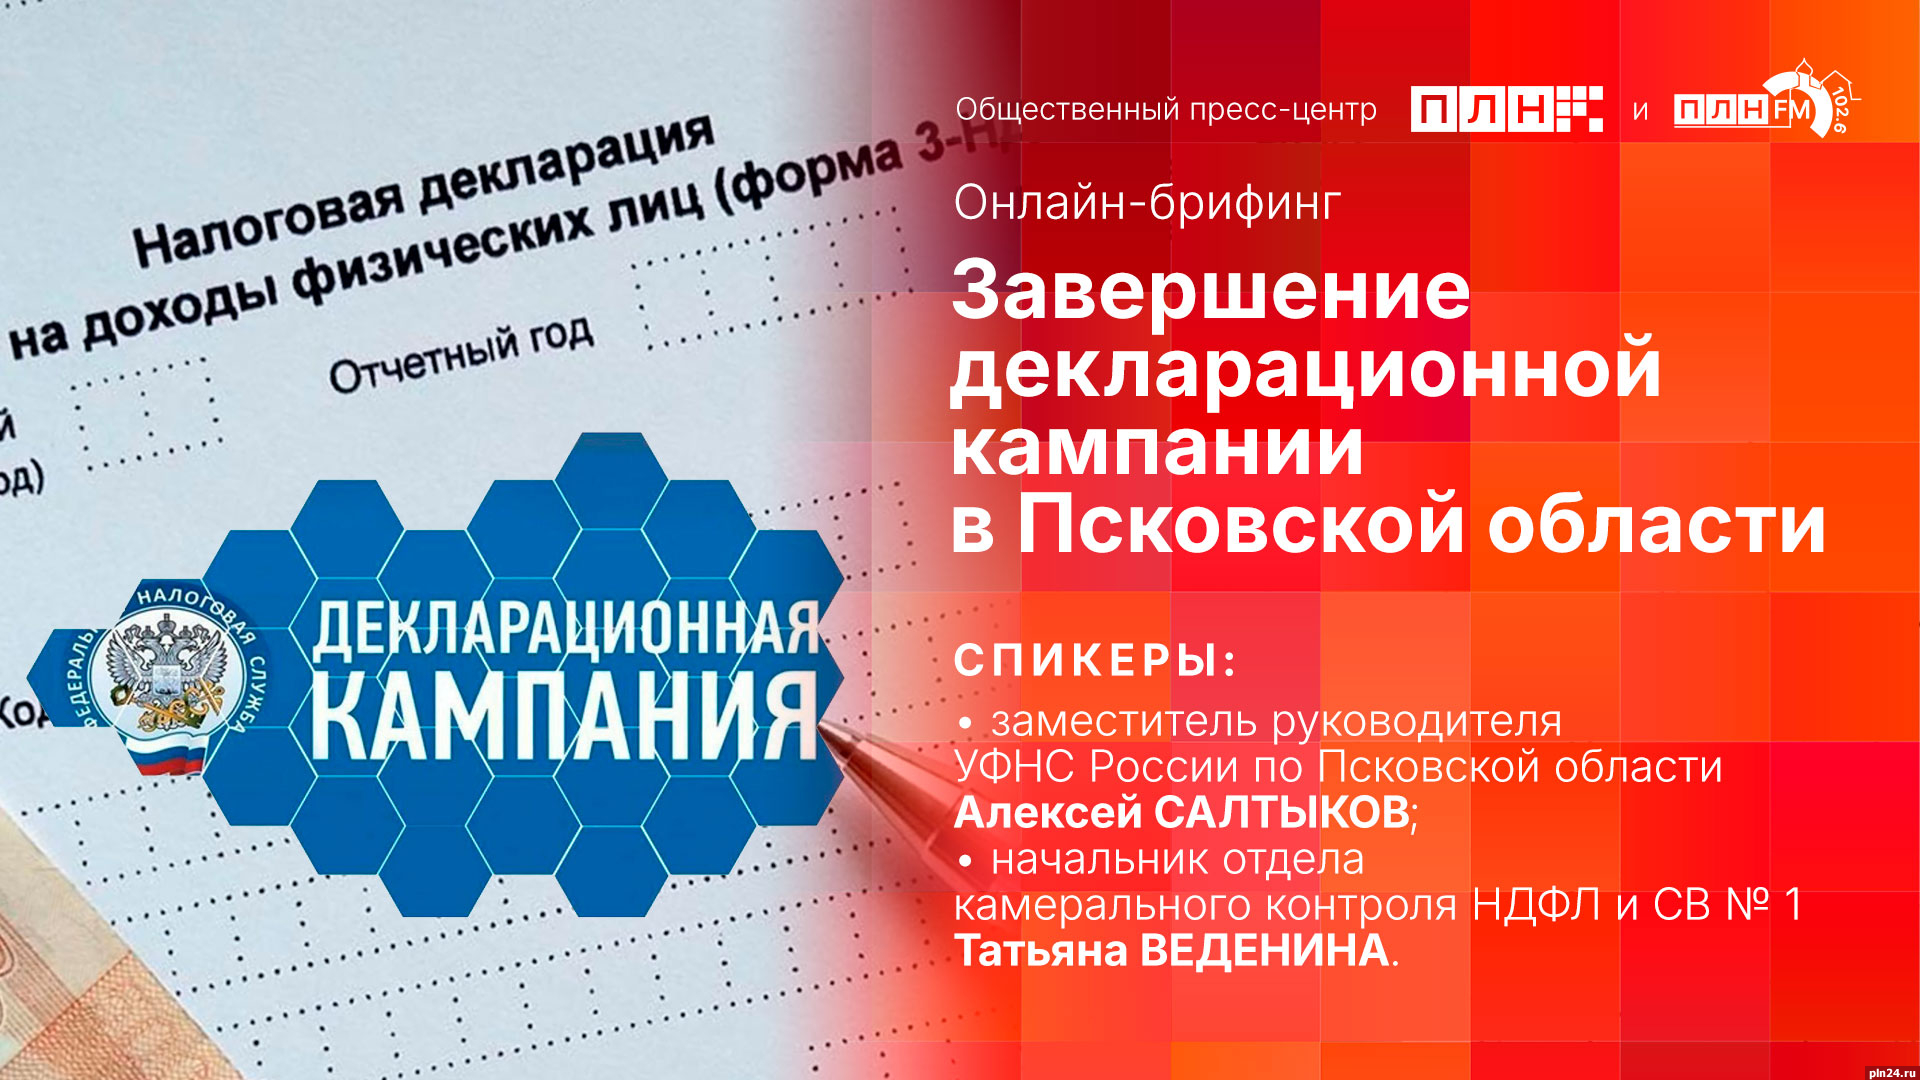 Брифинг, посвященный завершению декларационной кампании в Псковской области, пройдет в пресс-центре ПЛН